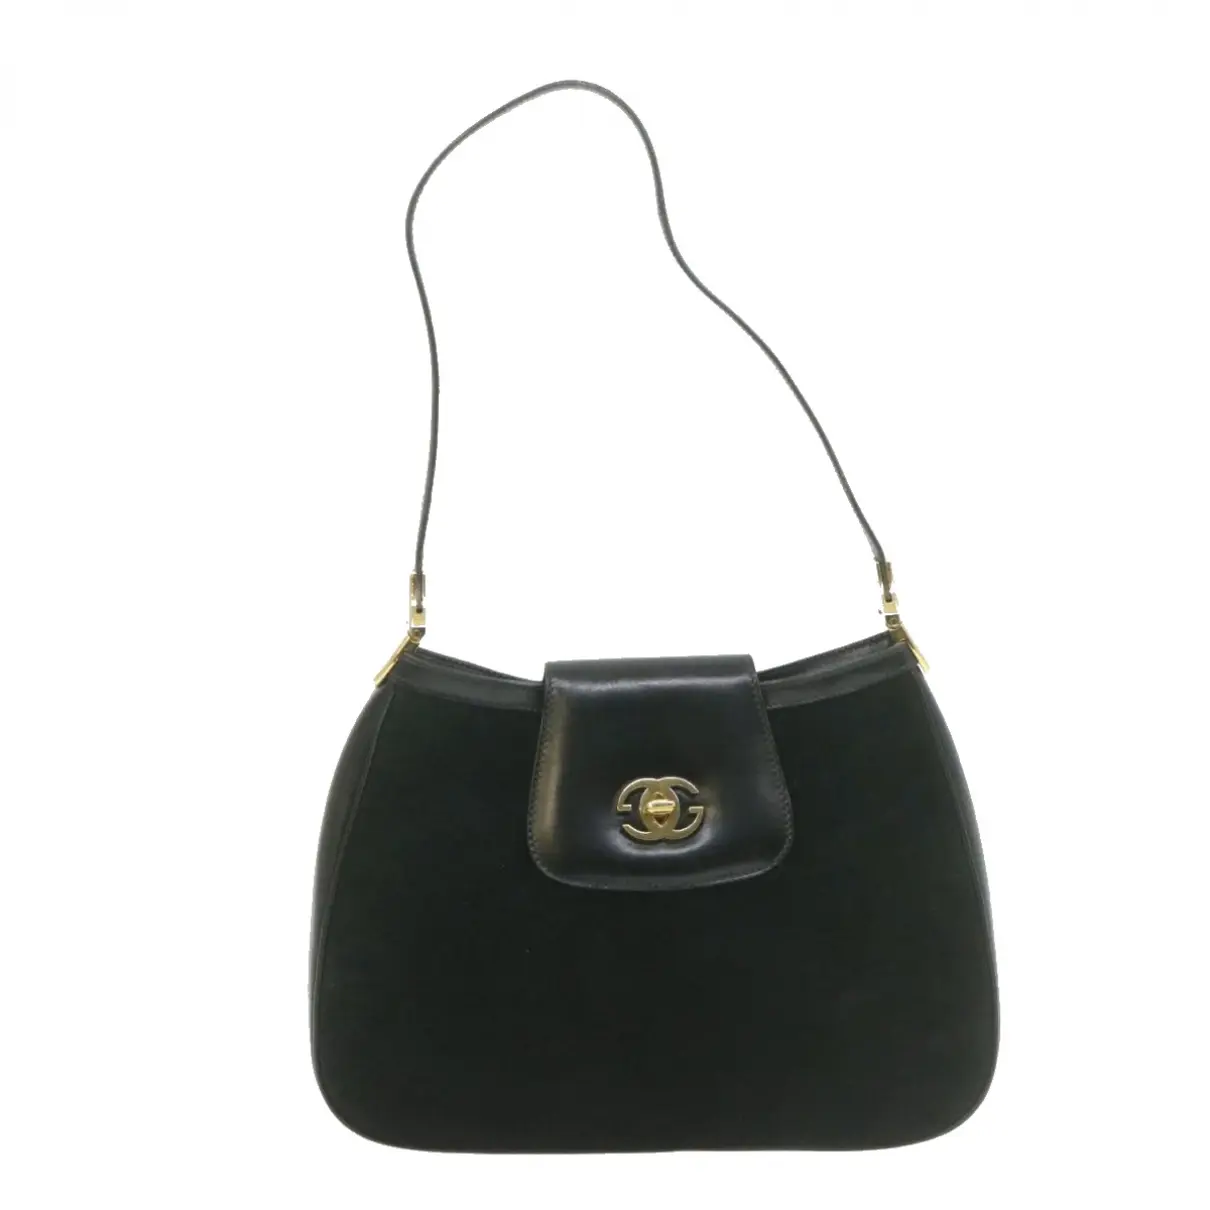 Buy Chanel Clutch bag online